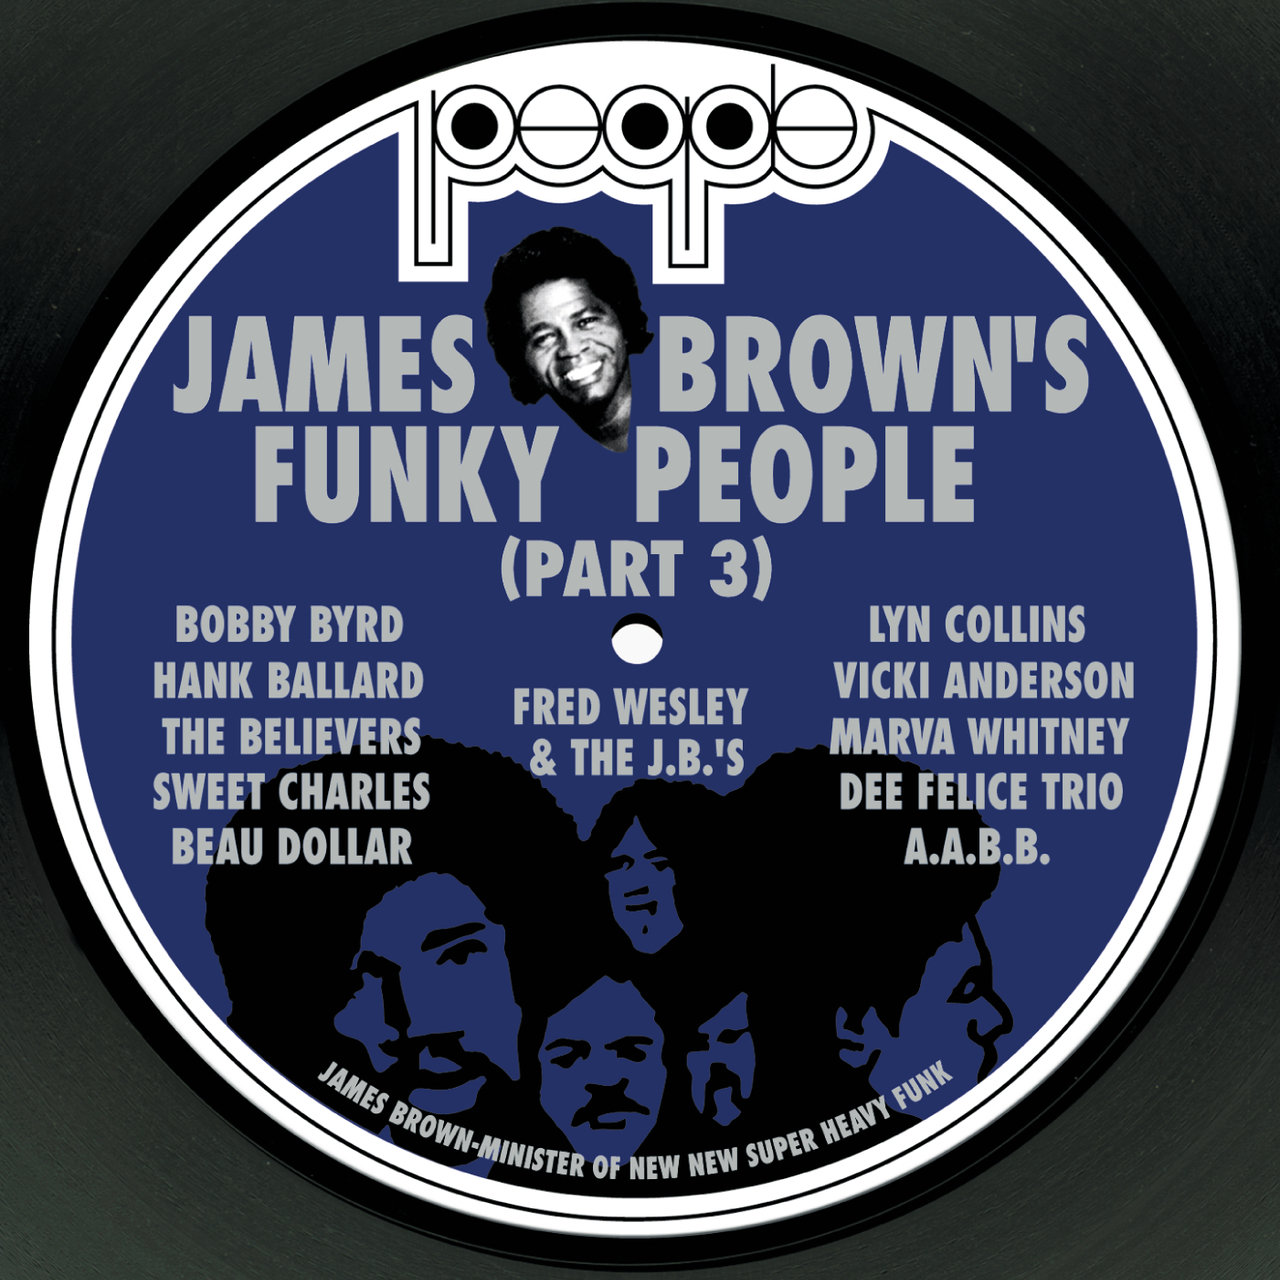 James Brown funky people 3